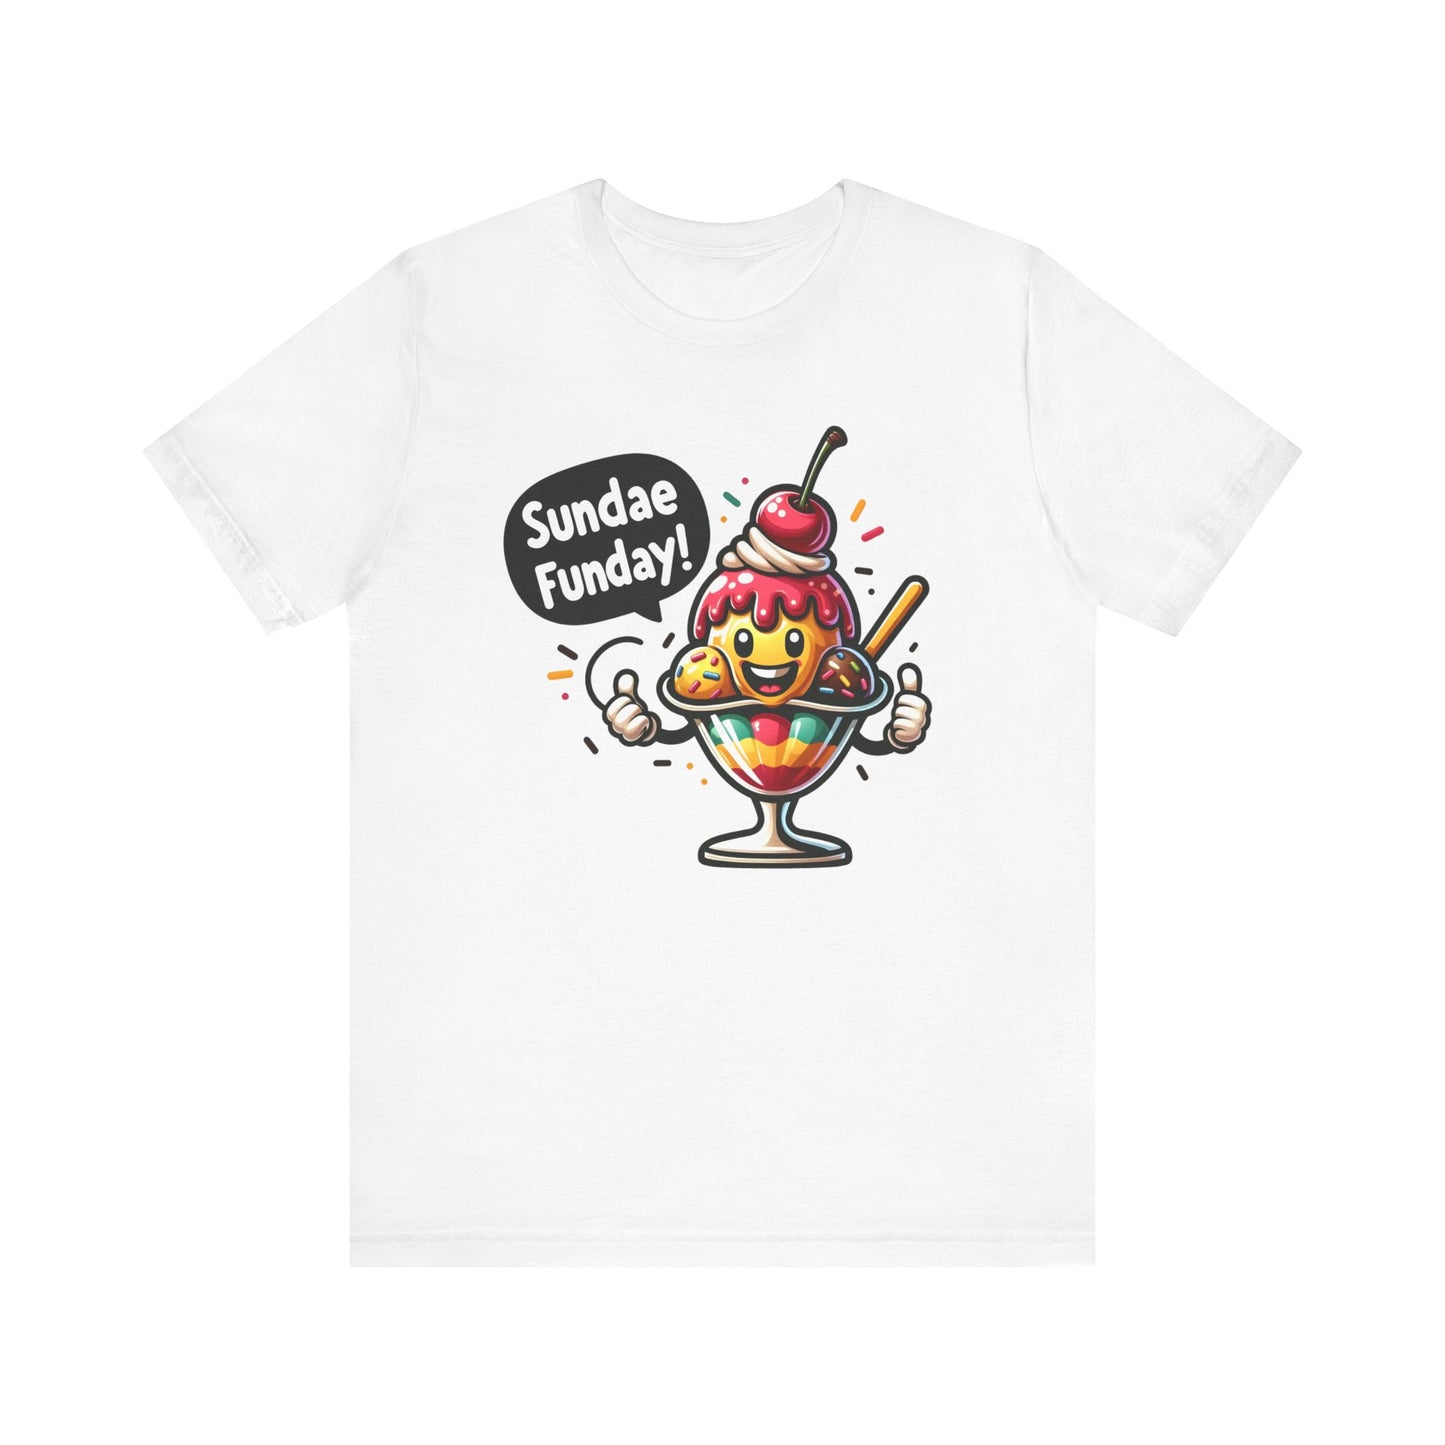 Sundae Funday T-Shirt, Funny Ice Cream Shirt, Ice Cream T-shirt, Ice Cream Gift for Him, Ice Cream Gift for Her, Ice Cream Funny Shirt